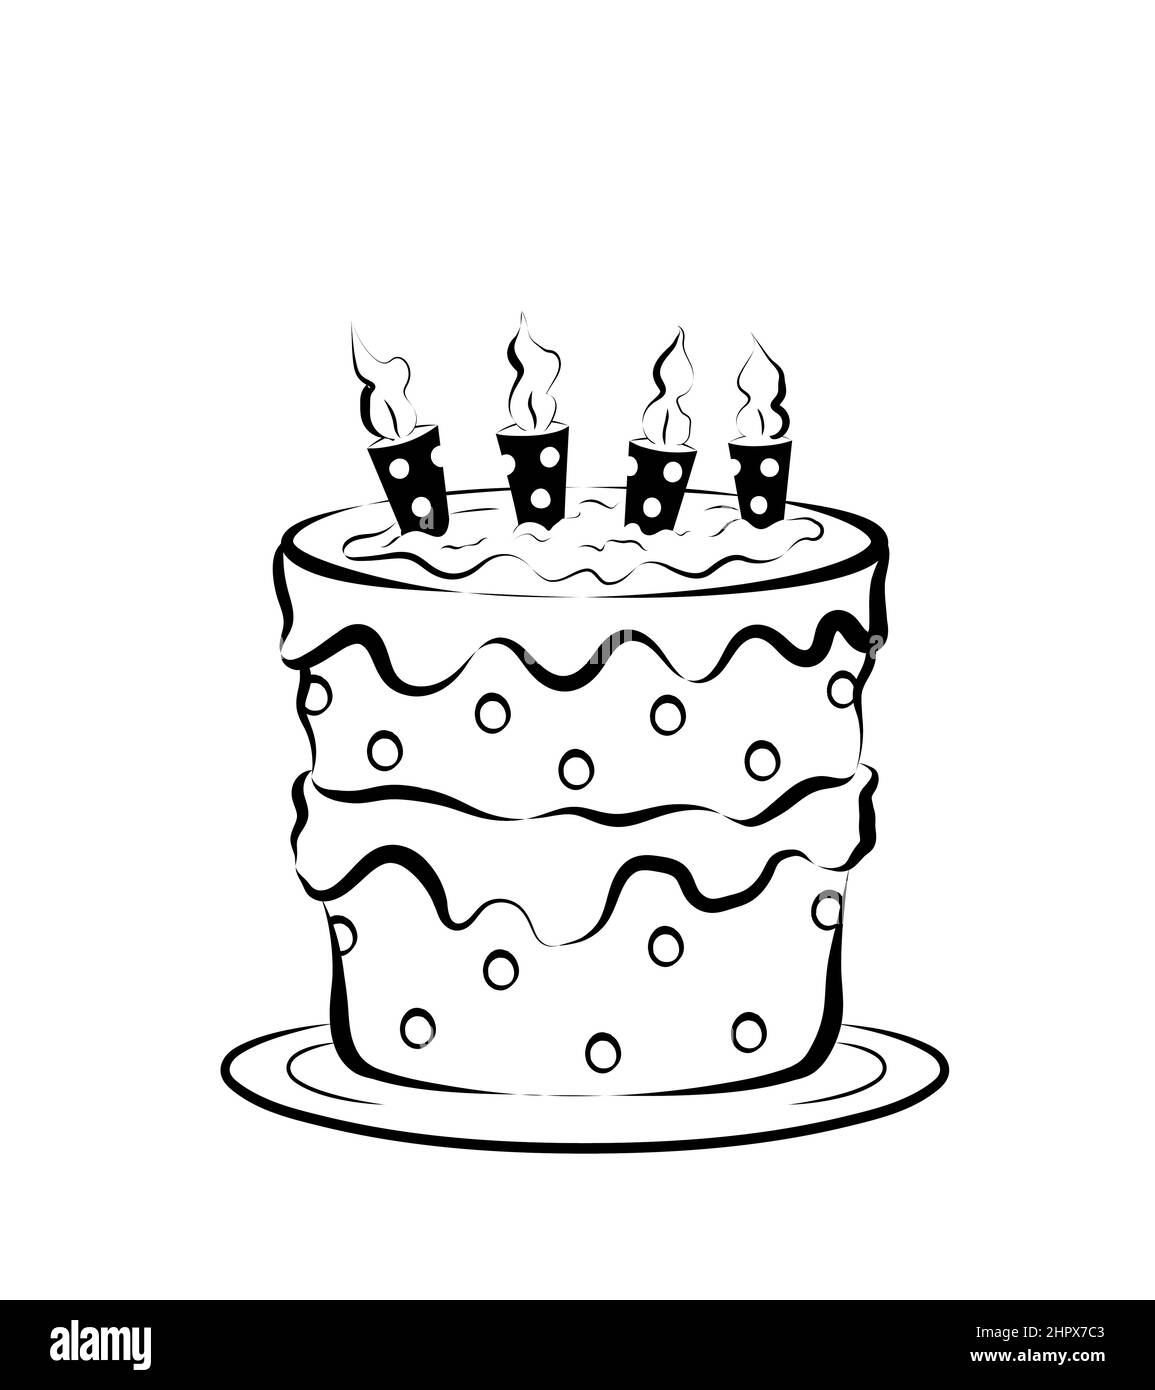 torta di compleanno in bianco e nero per bambini con quattro candele.  illustrazione isolata su sfondo bianco Foto stock - Alamy